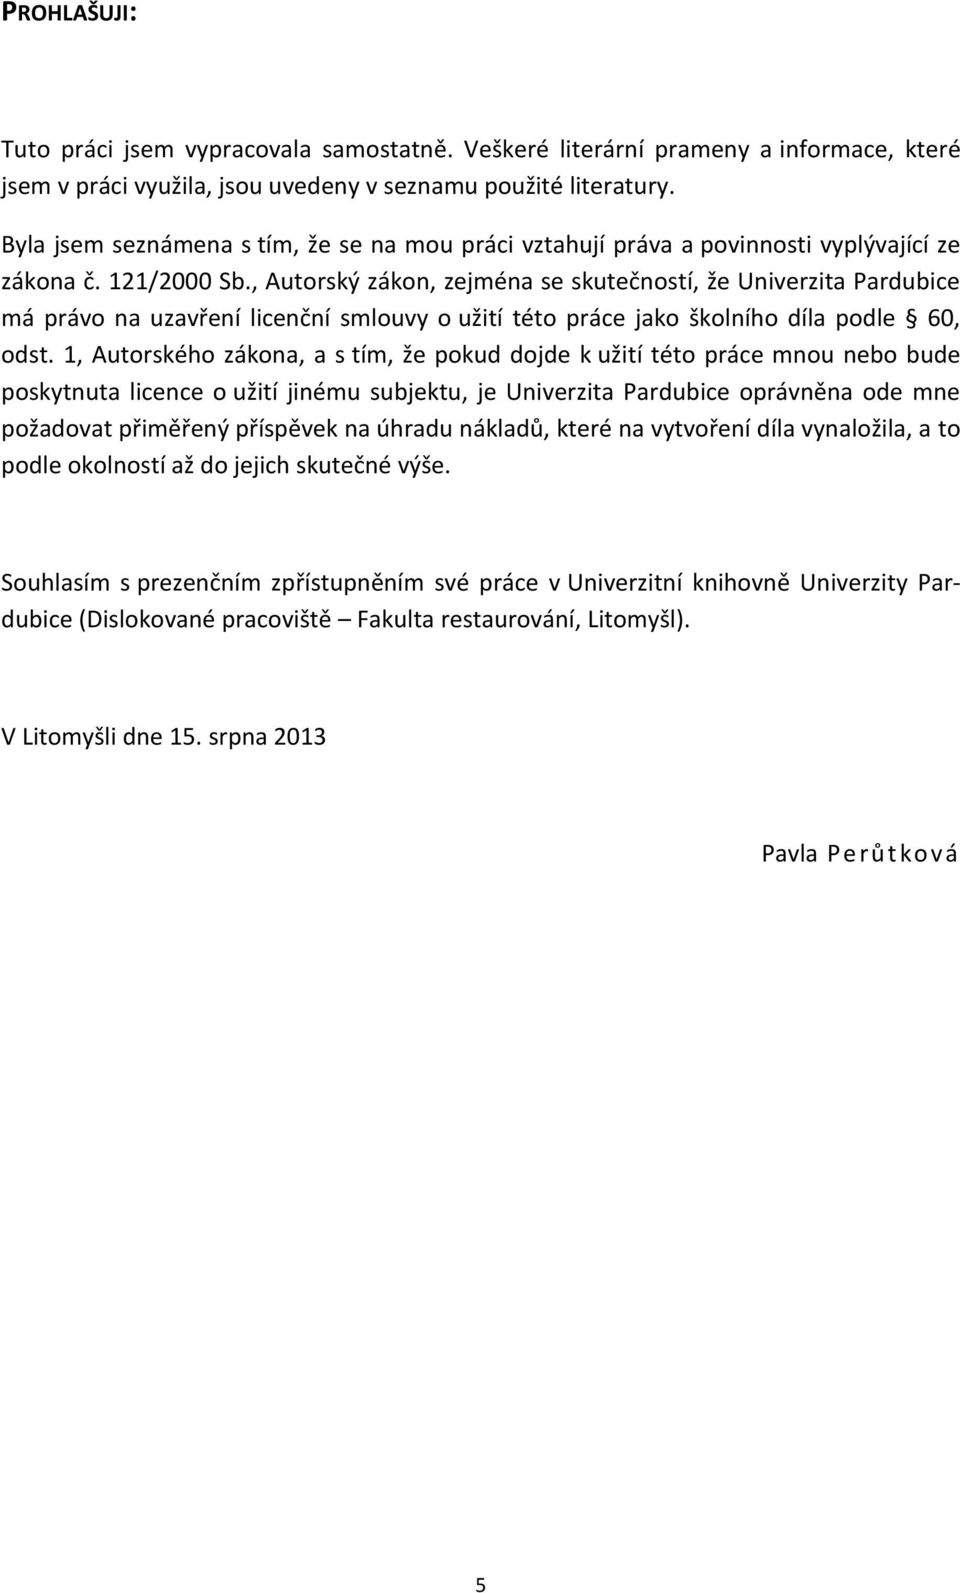 , Autorský zákon, zejména se skutečností, že Univerzita Pardubice má právo na uzavření licenční smlouvy o užití této práce jako školního díla podle 60, odst.